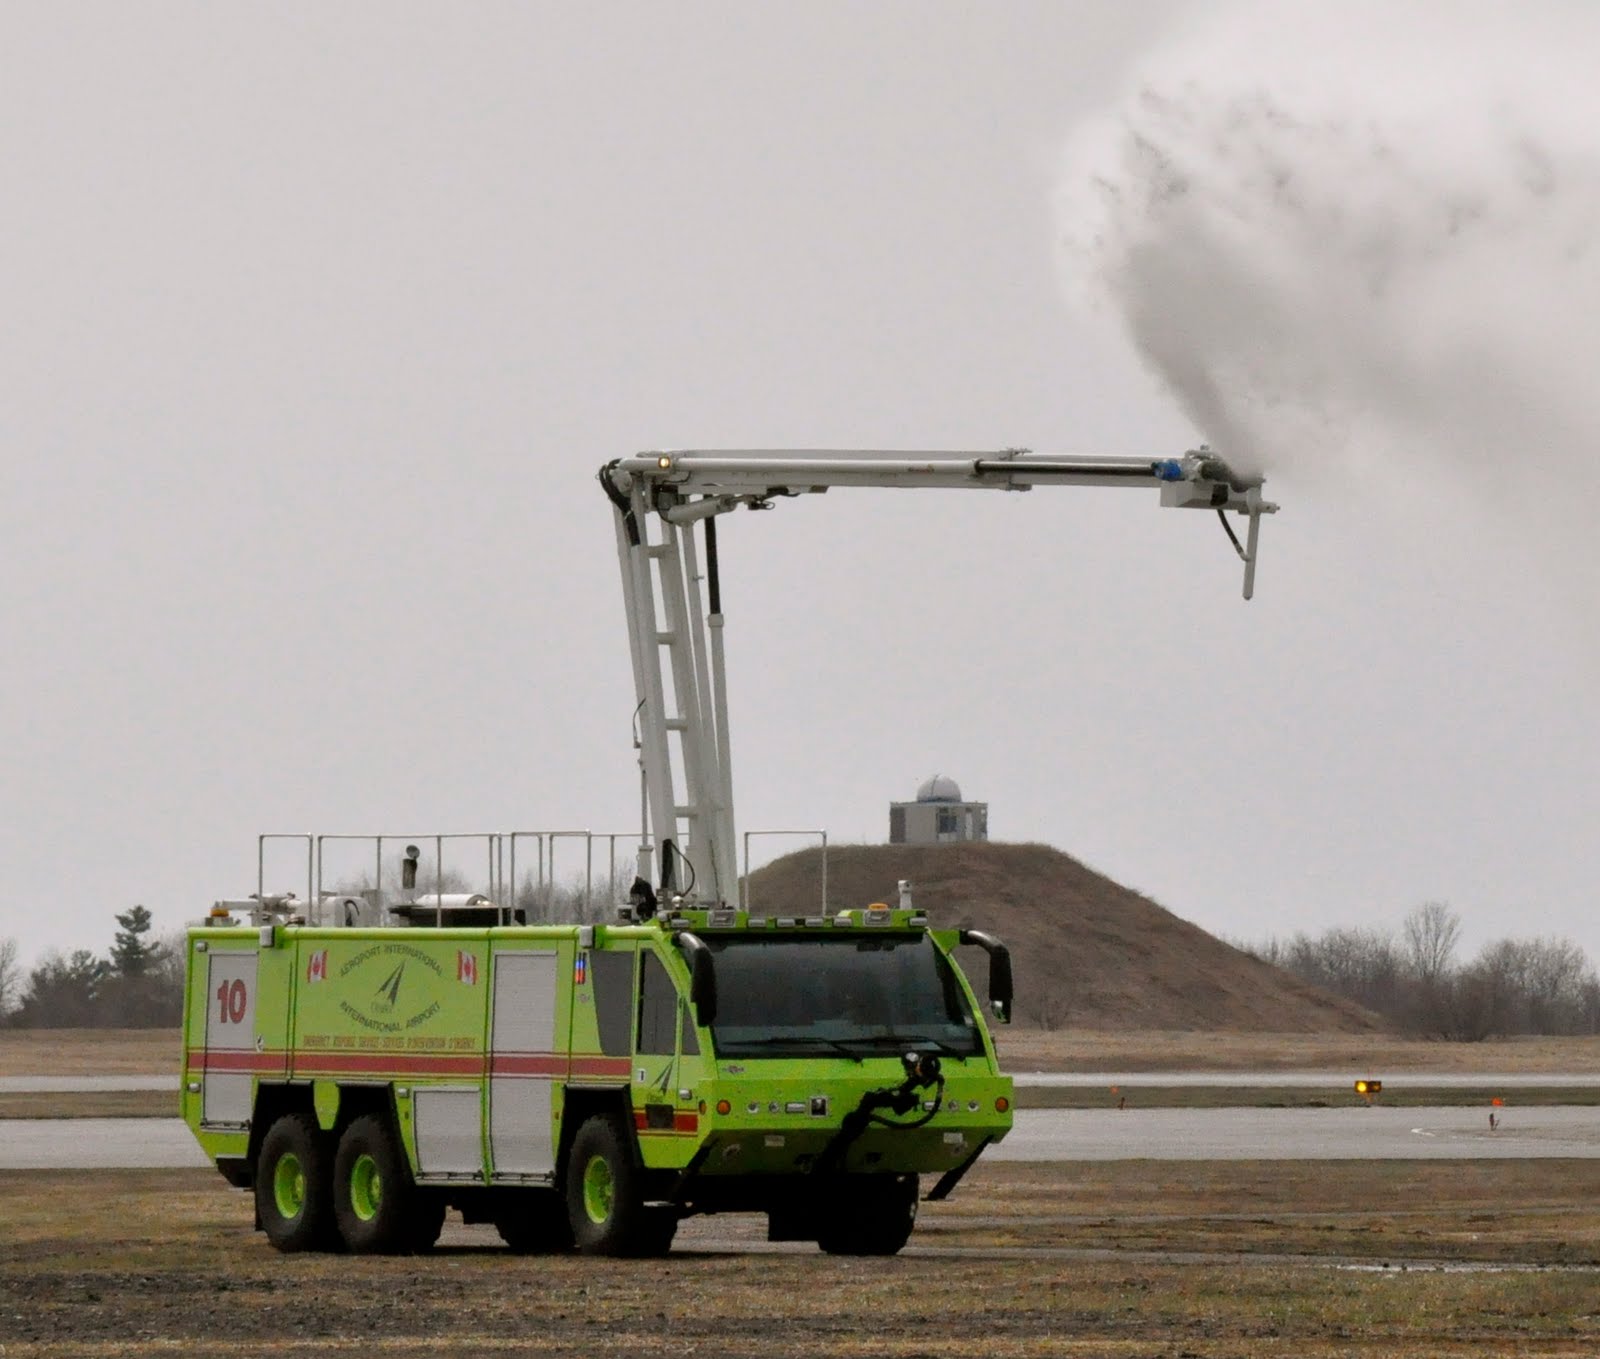 Ottawa airport fire department jobs